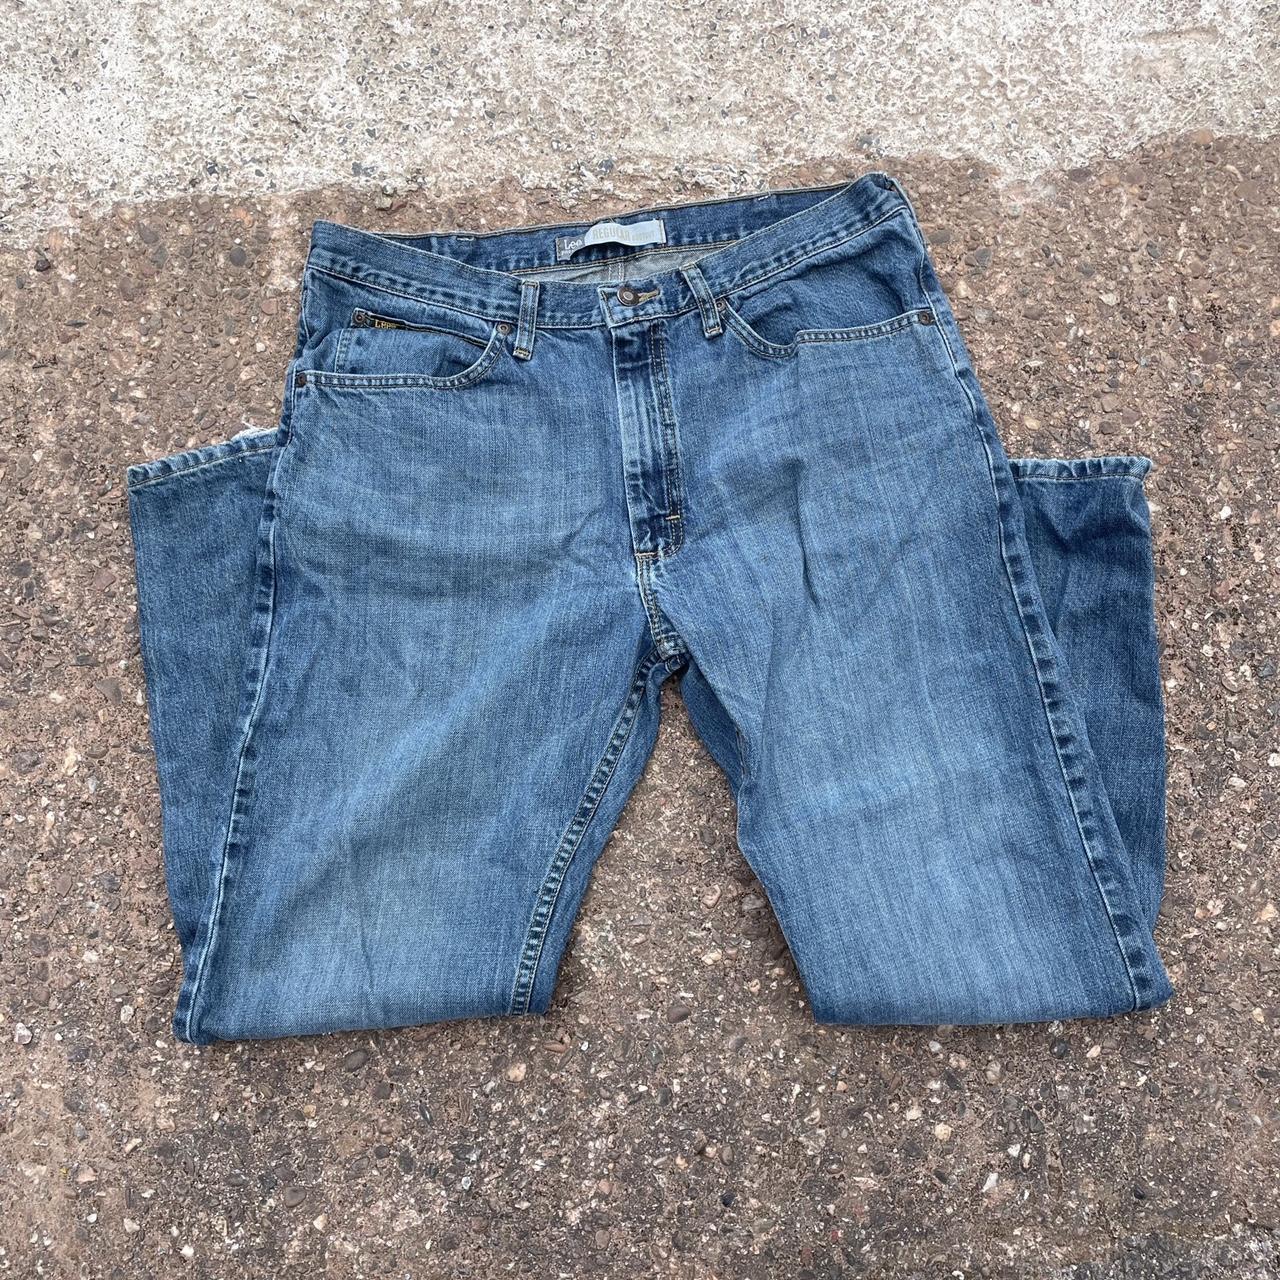 Lee Premium regular bootcut Jeans 🕺🏼 Size - Waist... - Depop